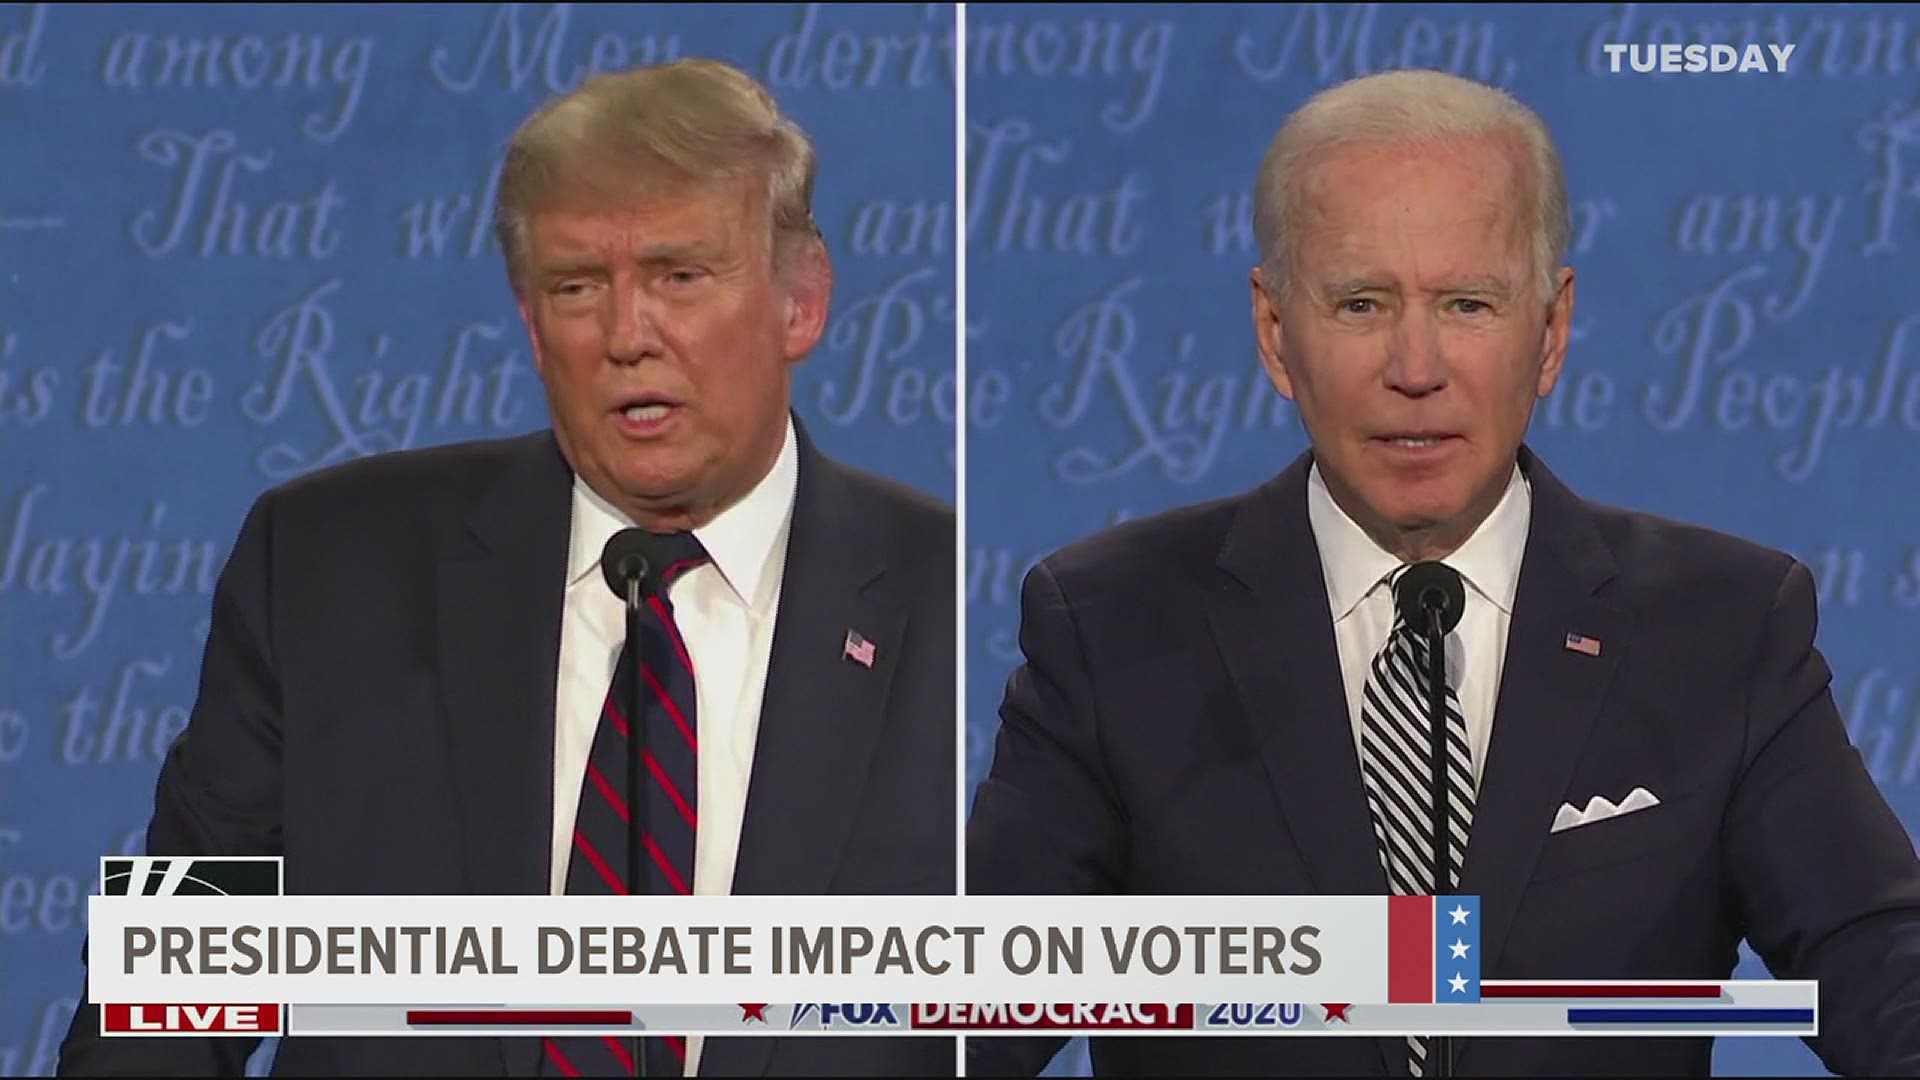 Presidental Debate Impact on Voters, political experts weigh in on last nights debate